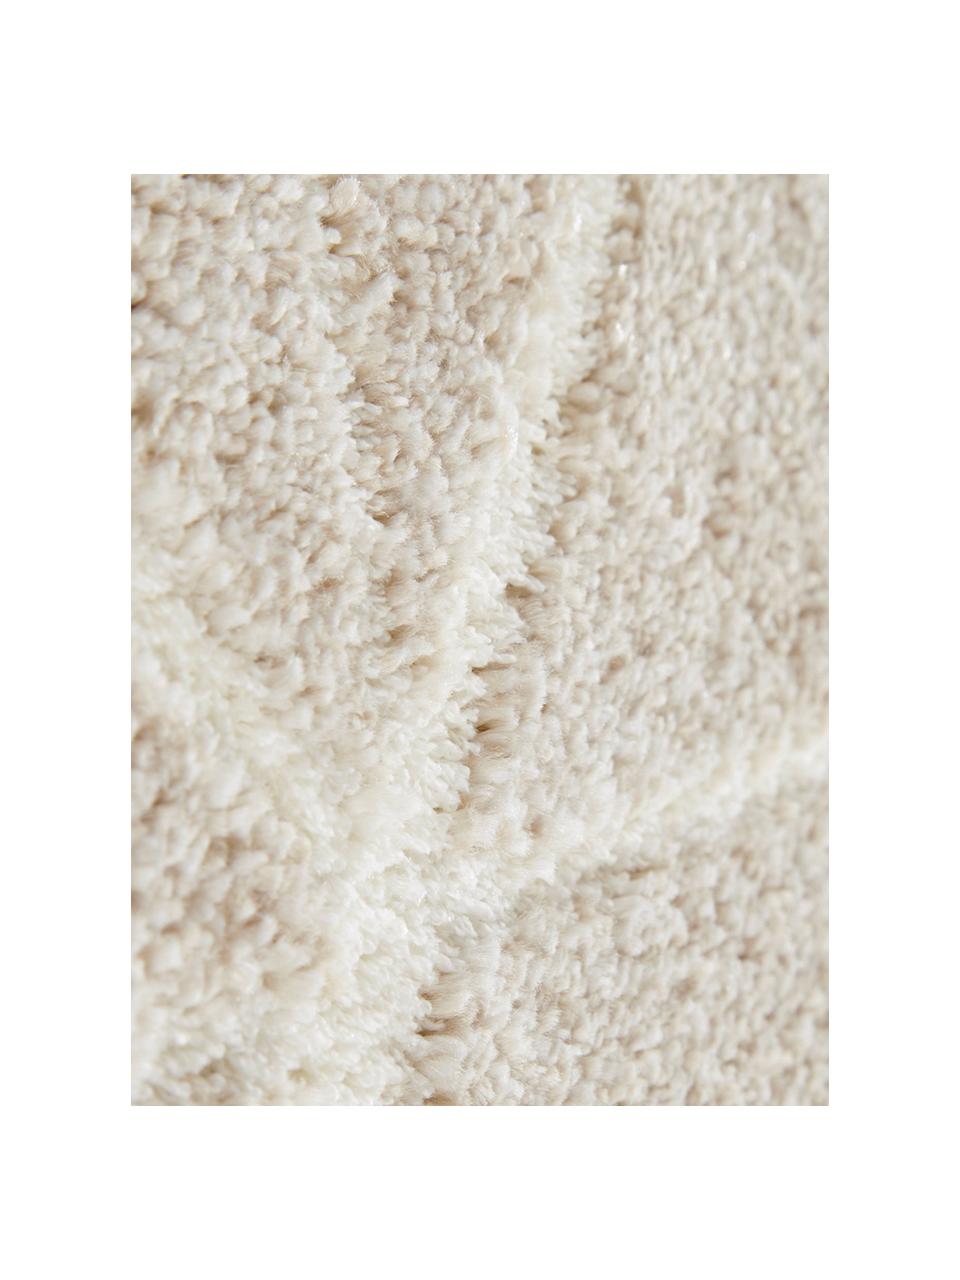 Teppich Arles in Beige-Creme, mit grafischem Muster, Flor: 85% Polypropylen, 15% Pol, Beige, Creme, B 200 x L 290 cm (Grösse L)